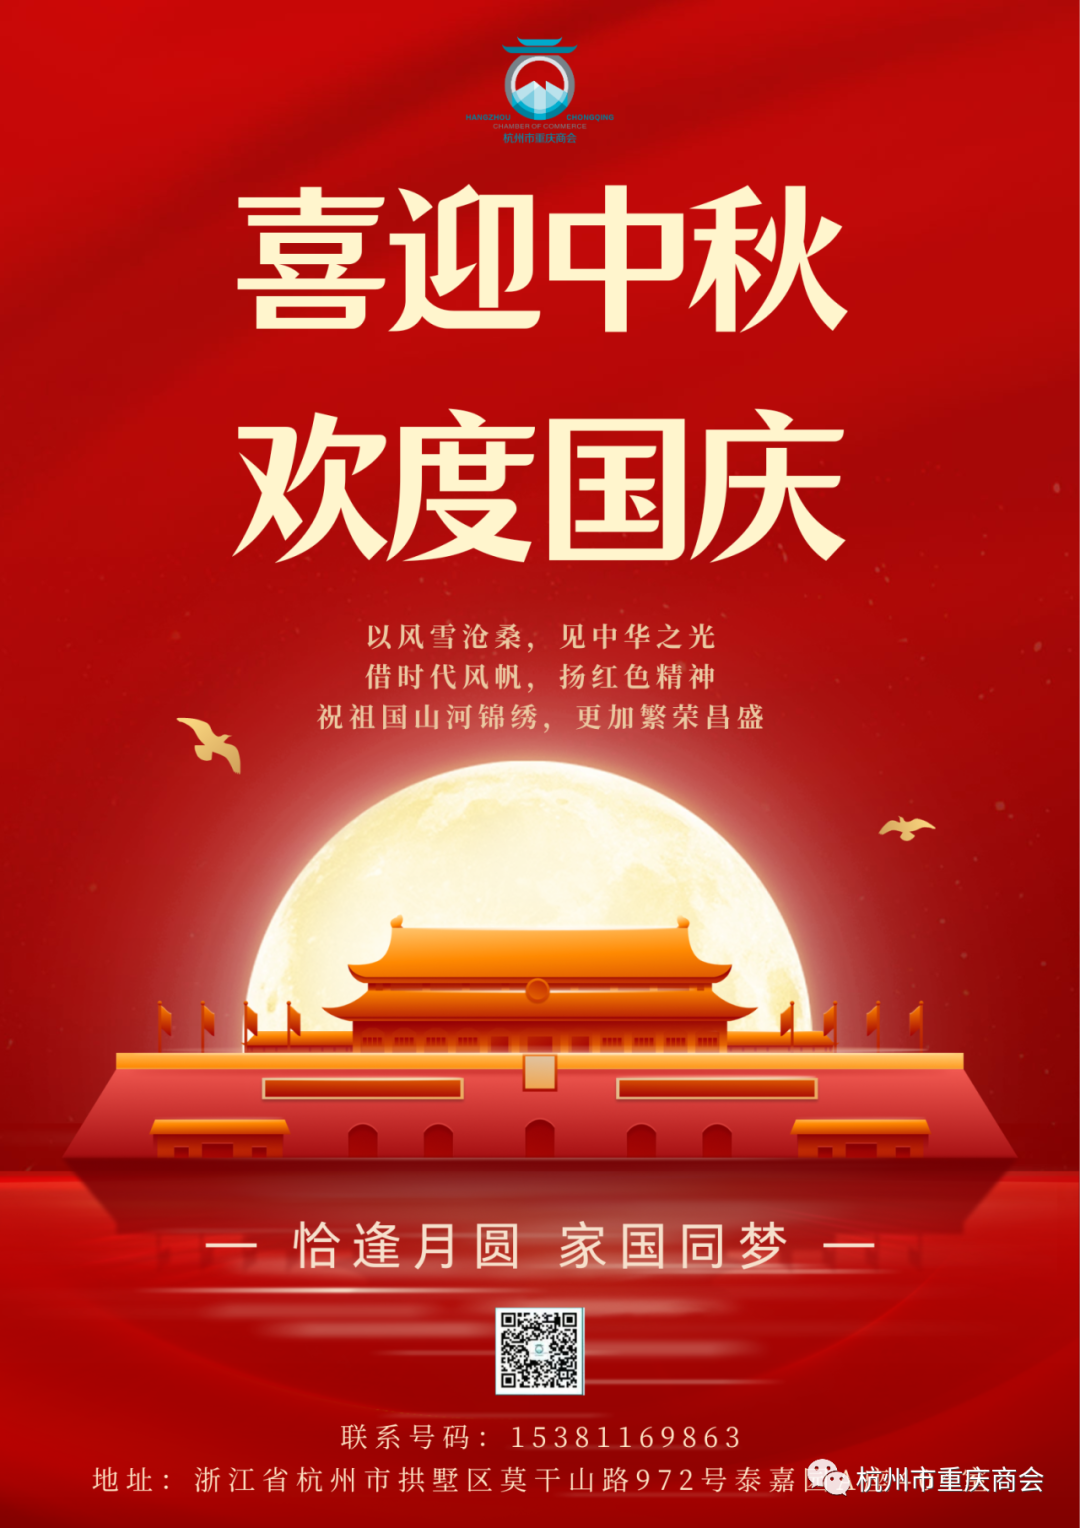 迎中秋满月·庆盛世华诞|杭州市重庆商会祝大家双节快乐！